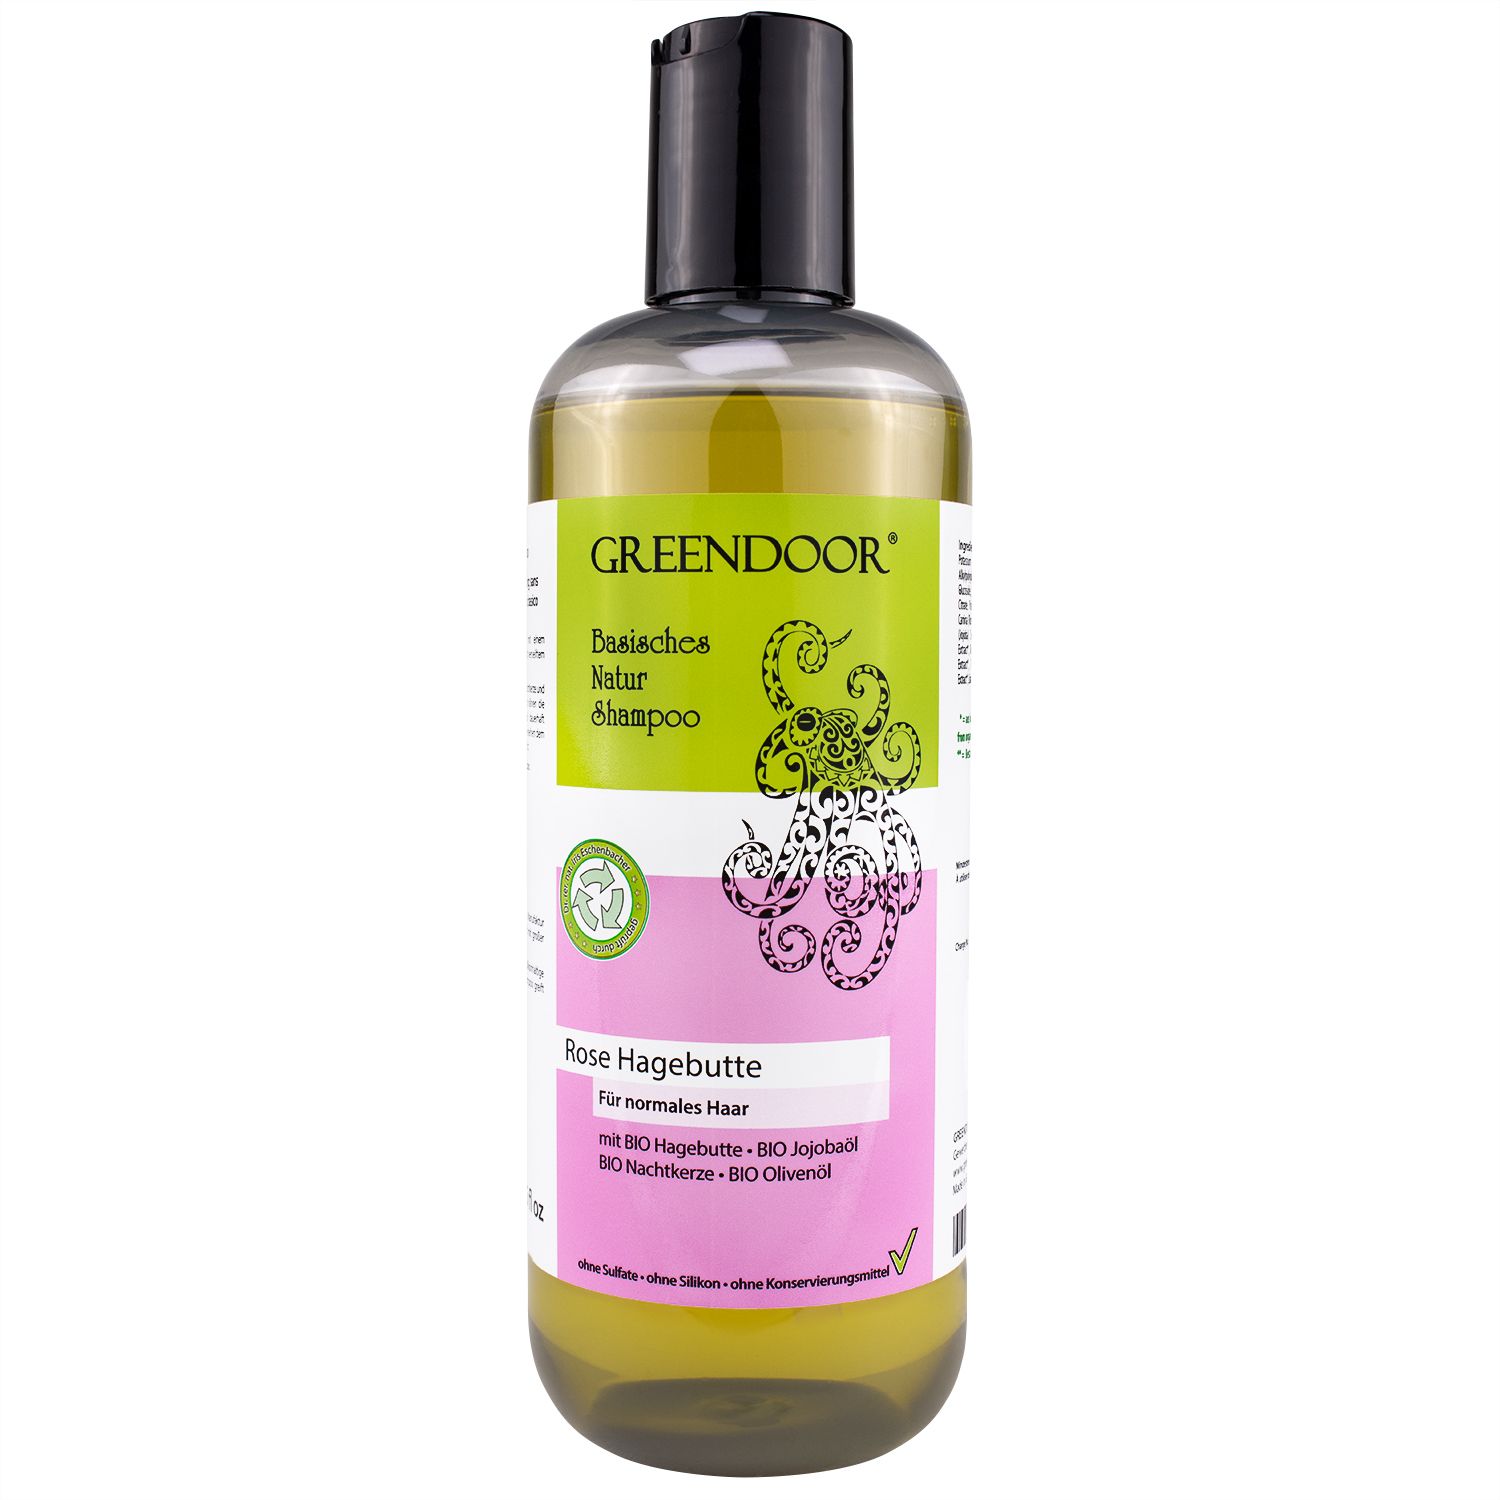 Basisches Natur Shampoo Rose Hagebutte, vegan, natürlich, outdoor geeignet, mit Bio Ölen